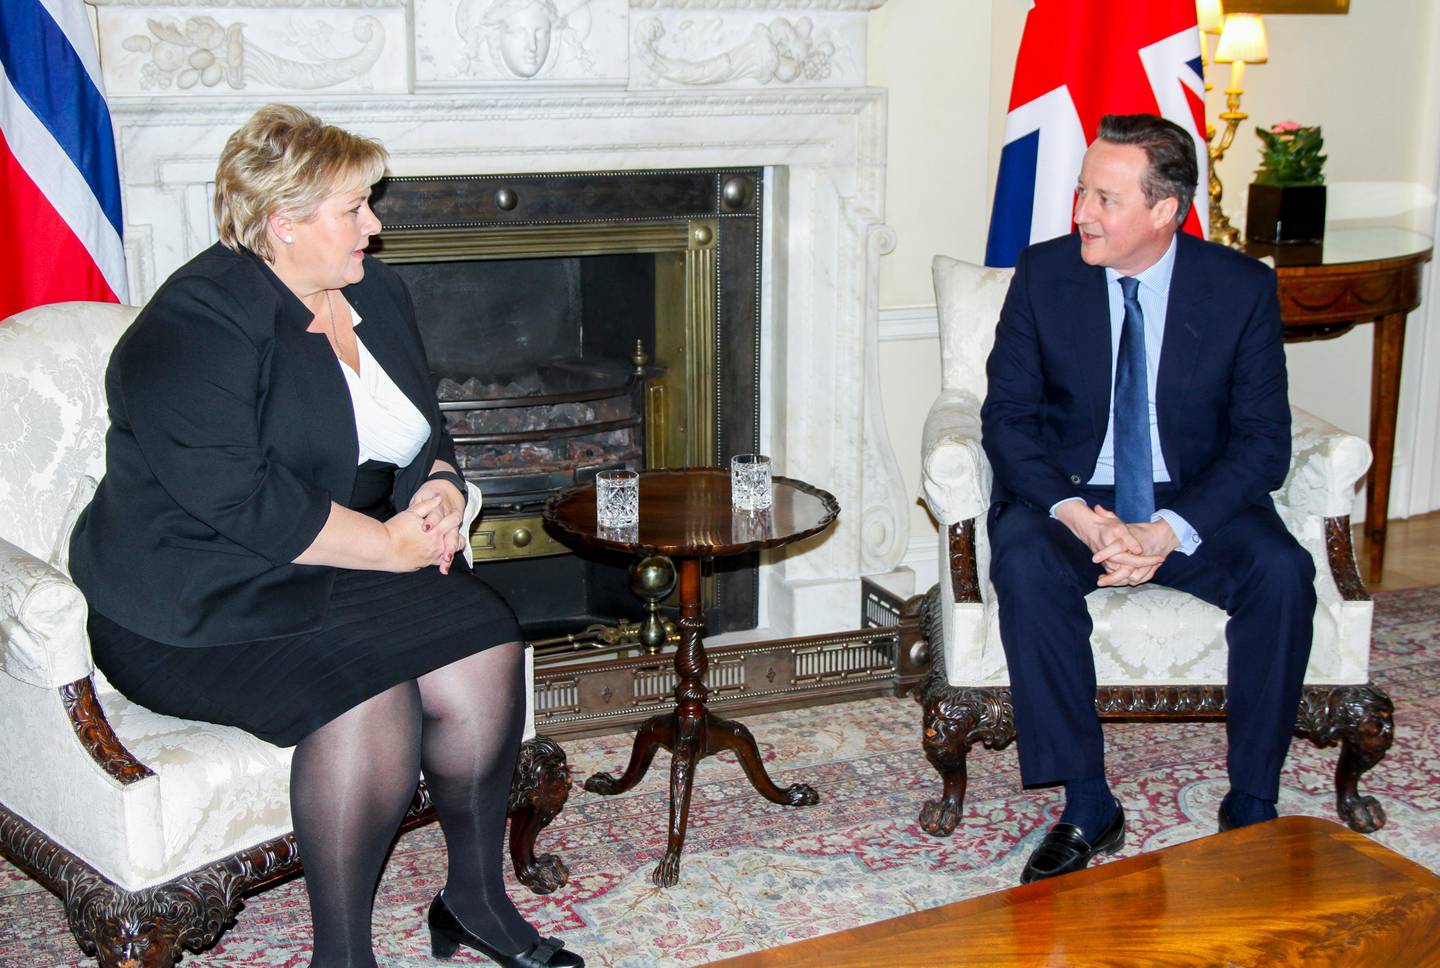 London, Storbritannia 20160203.
Statsminister Erna Solberg besøker Storbritannias statsminister David Cameron i 10 Downing Street i London onsdag kveld.
Foto: Anne Marte Vestbakke / NTB